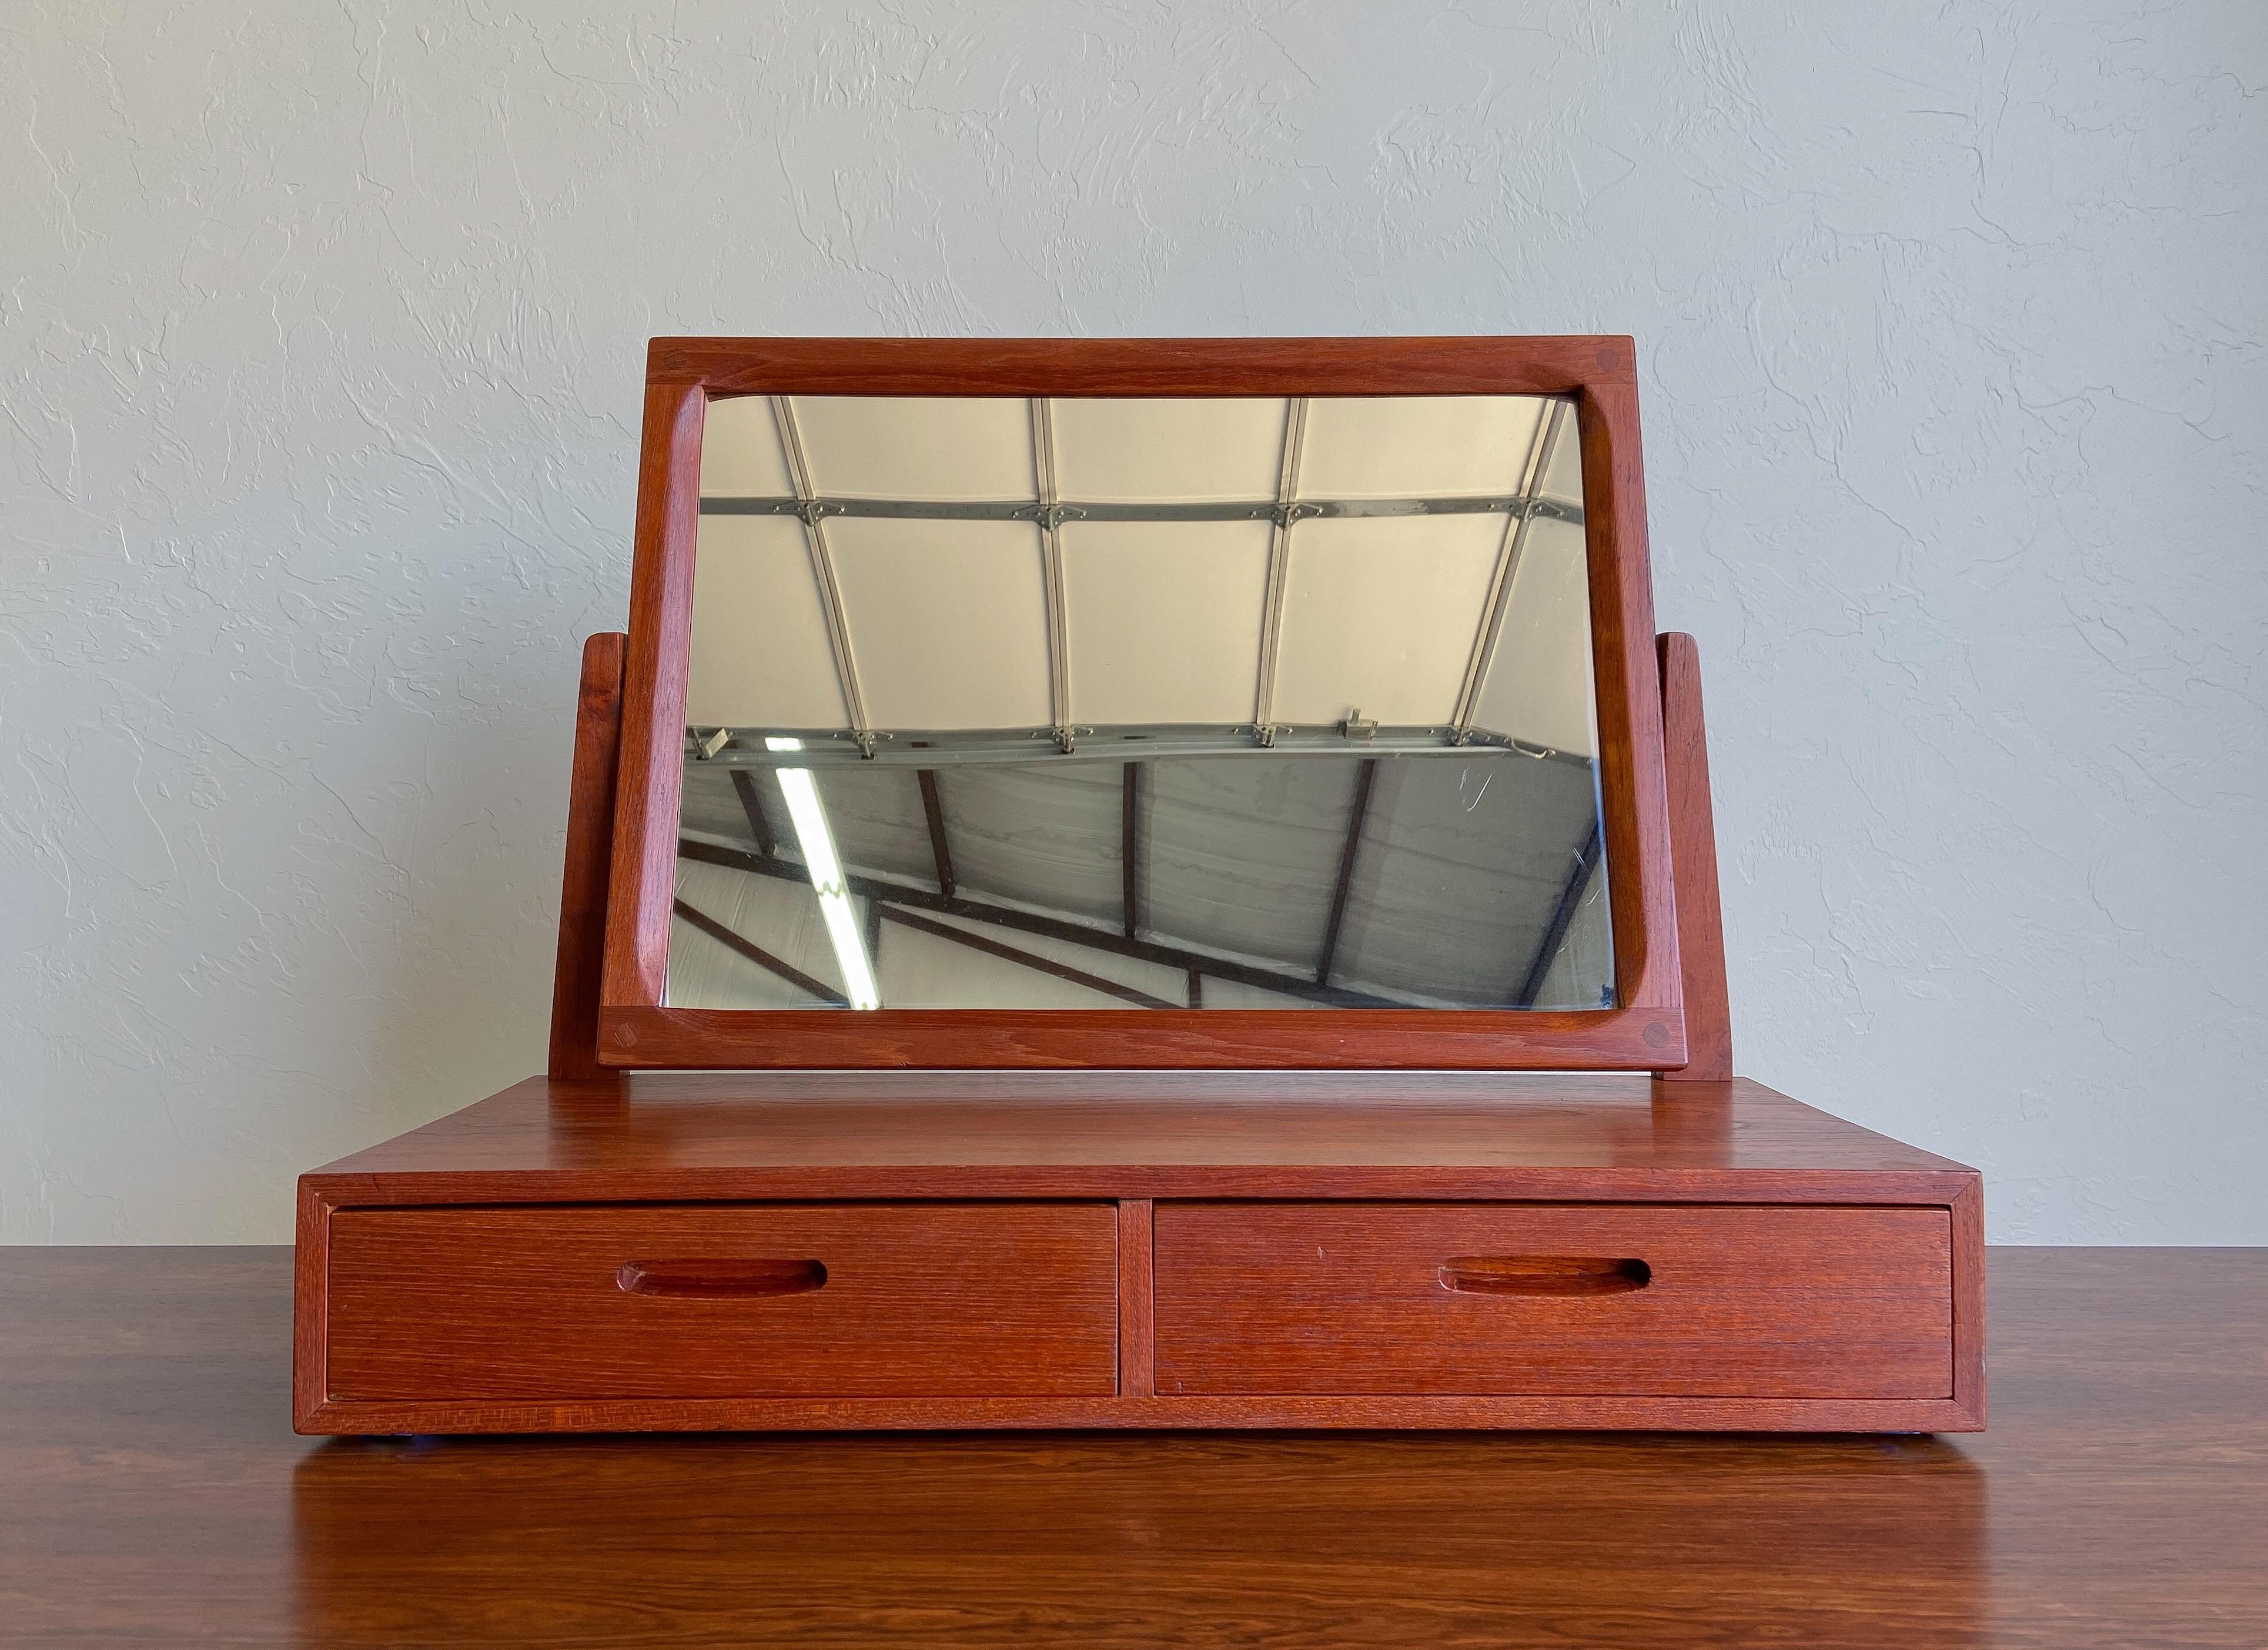 Angeboten wird ein ungewöhnlicher Tischspiegel, entworfen von Kai Kristiansen und hergestellt von Aksel Kjersgaard.

Die Konstruktion aus massivem Teakholz mit freiliegenden Tischlerarbeiten am Spiegelrahmen. Zwei Schubladen sind ideal für die